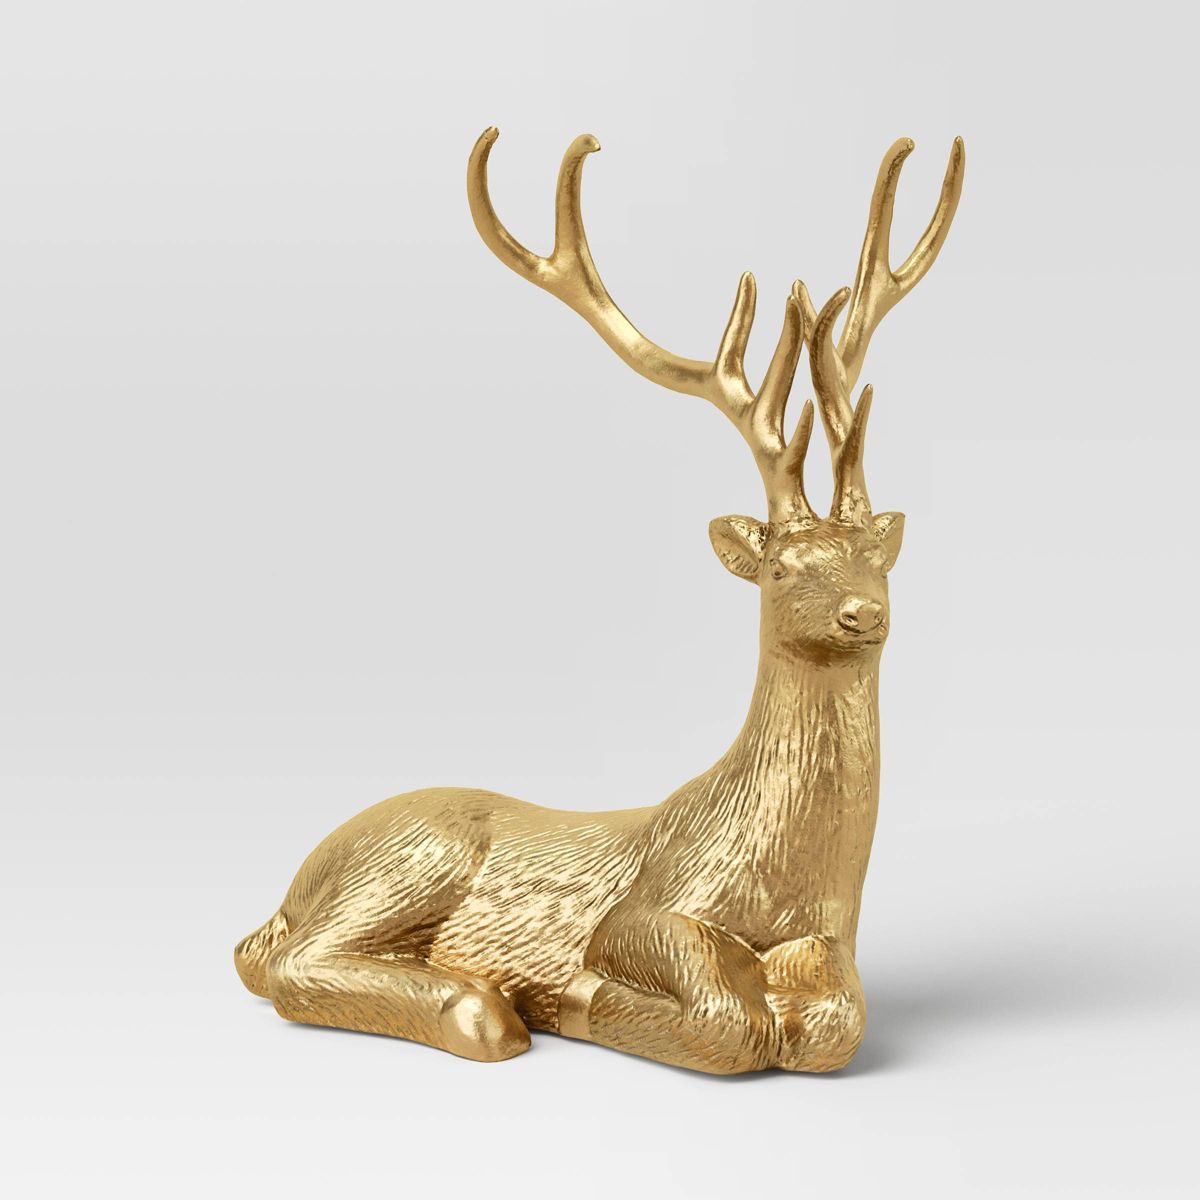 13" Sitting Deer Animal Christmas Figurine - Wondershop™ Gold | Target